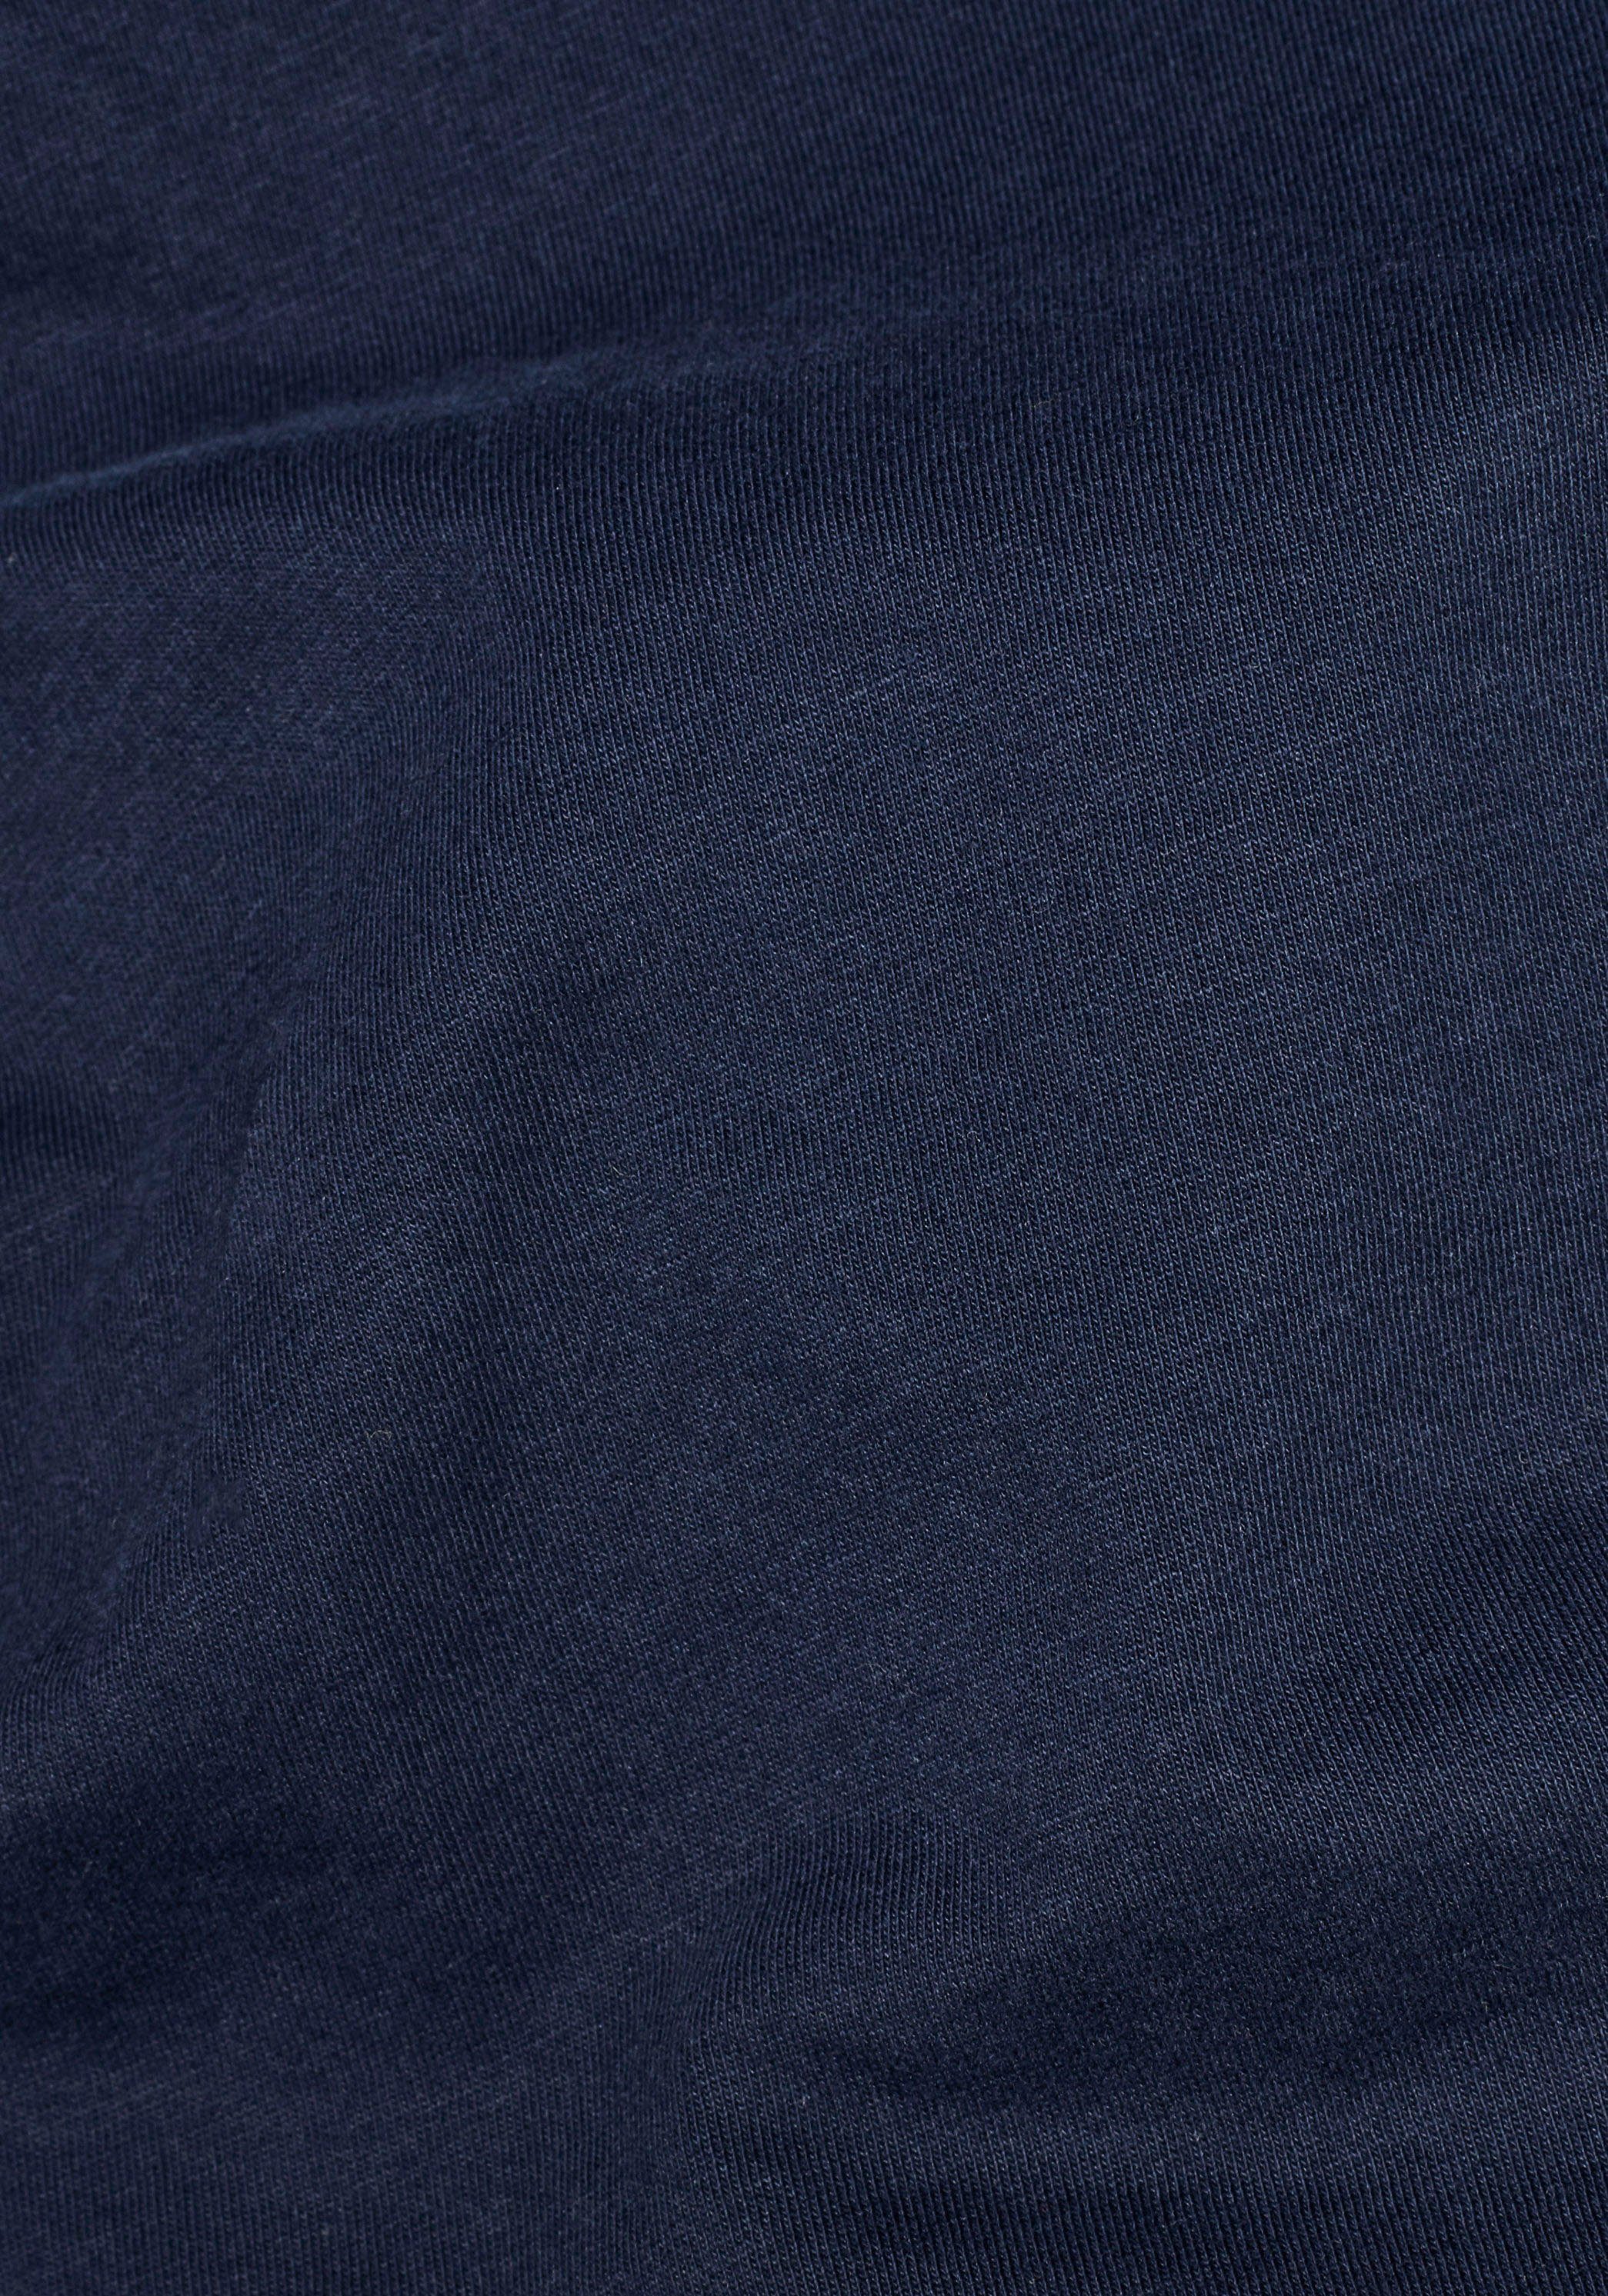 Stitching kleinem navy-meliert T-Shirt Logo RAW mit G-Star Lash